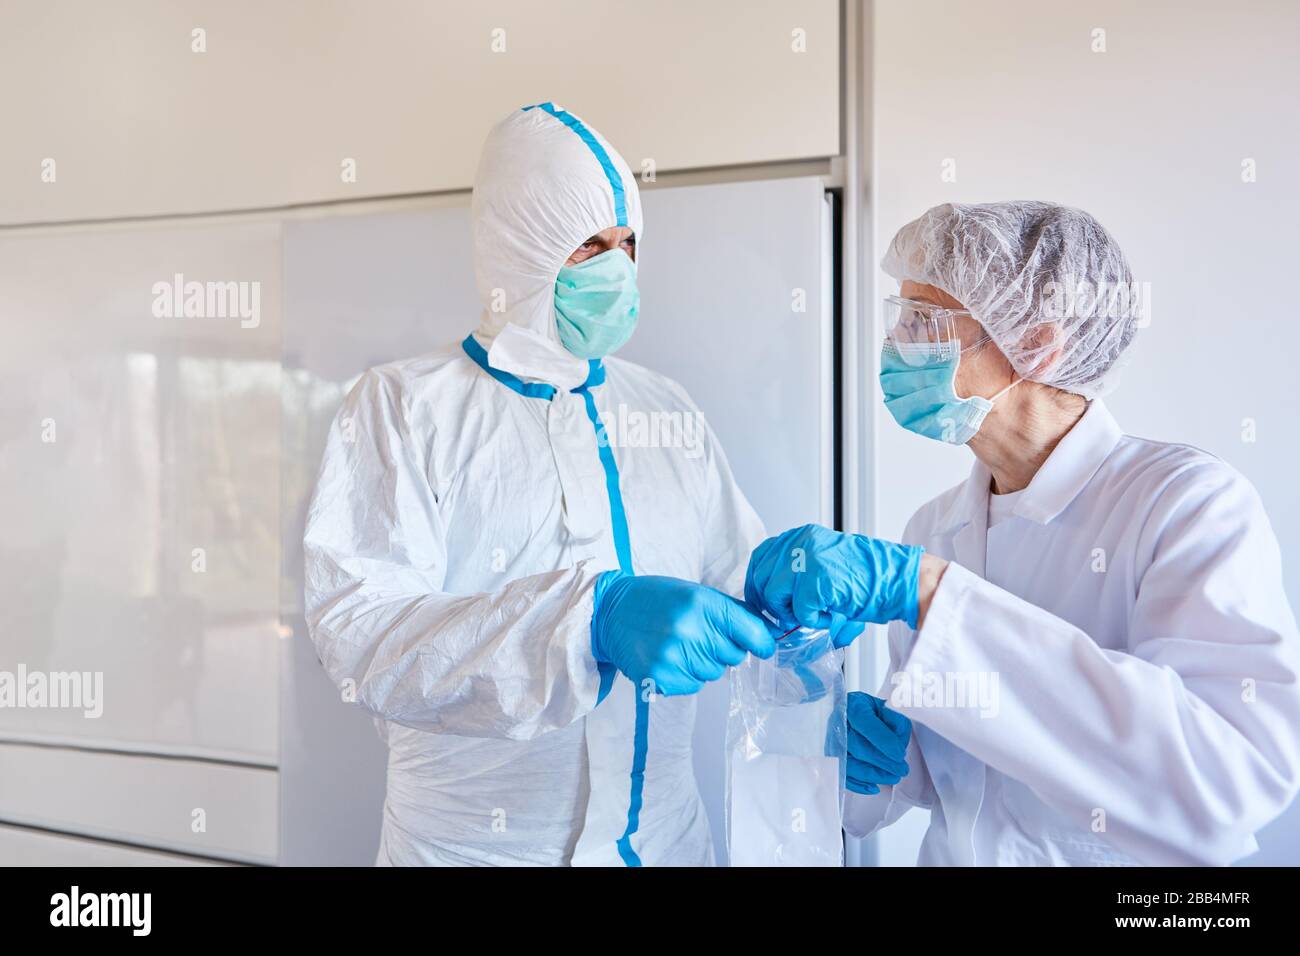 Doctors examine saliva sample in coronavirus epidemic in laboratory for Sars-CoV-2 Stock Photo